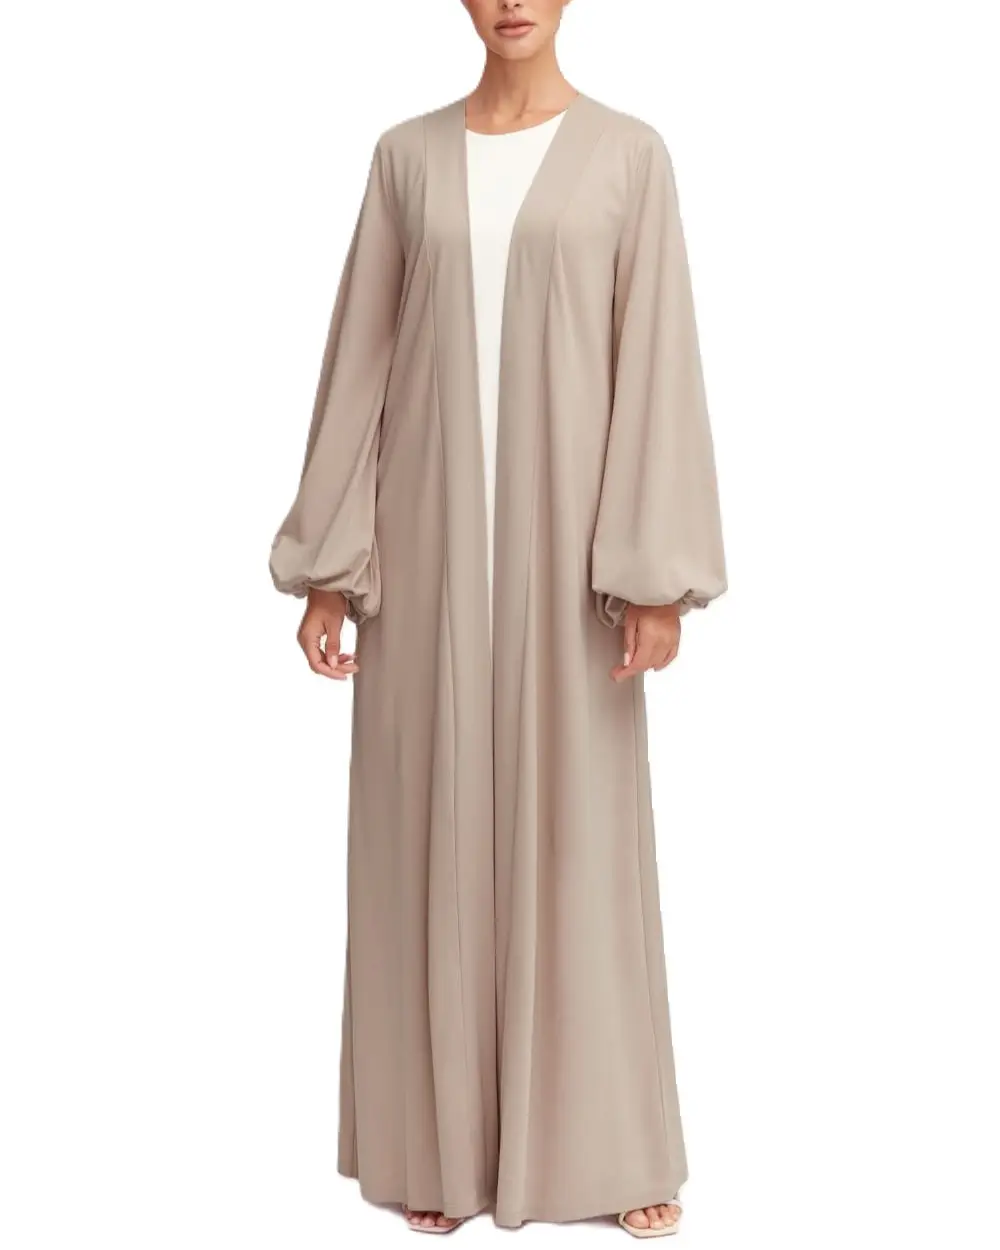 Hochwertige bescheidene islamische Kleidung langes Gebetskleid einfarbiges Kleid offene Vorderseite Innenabadewäsche Damen muslimisches Kleid Hijab Abaya